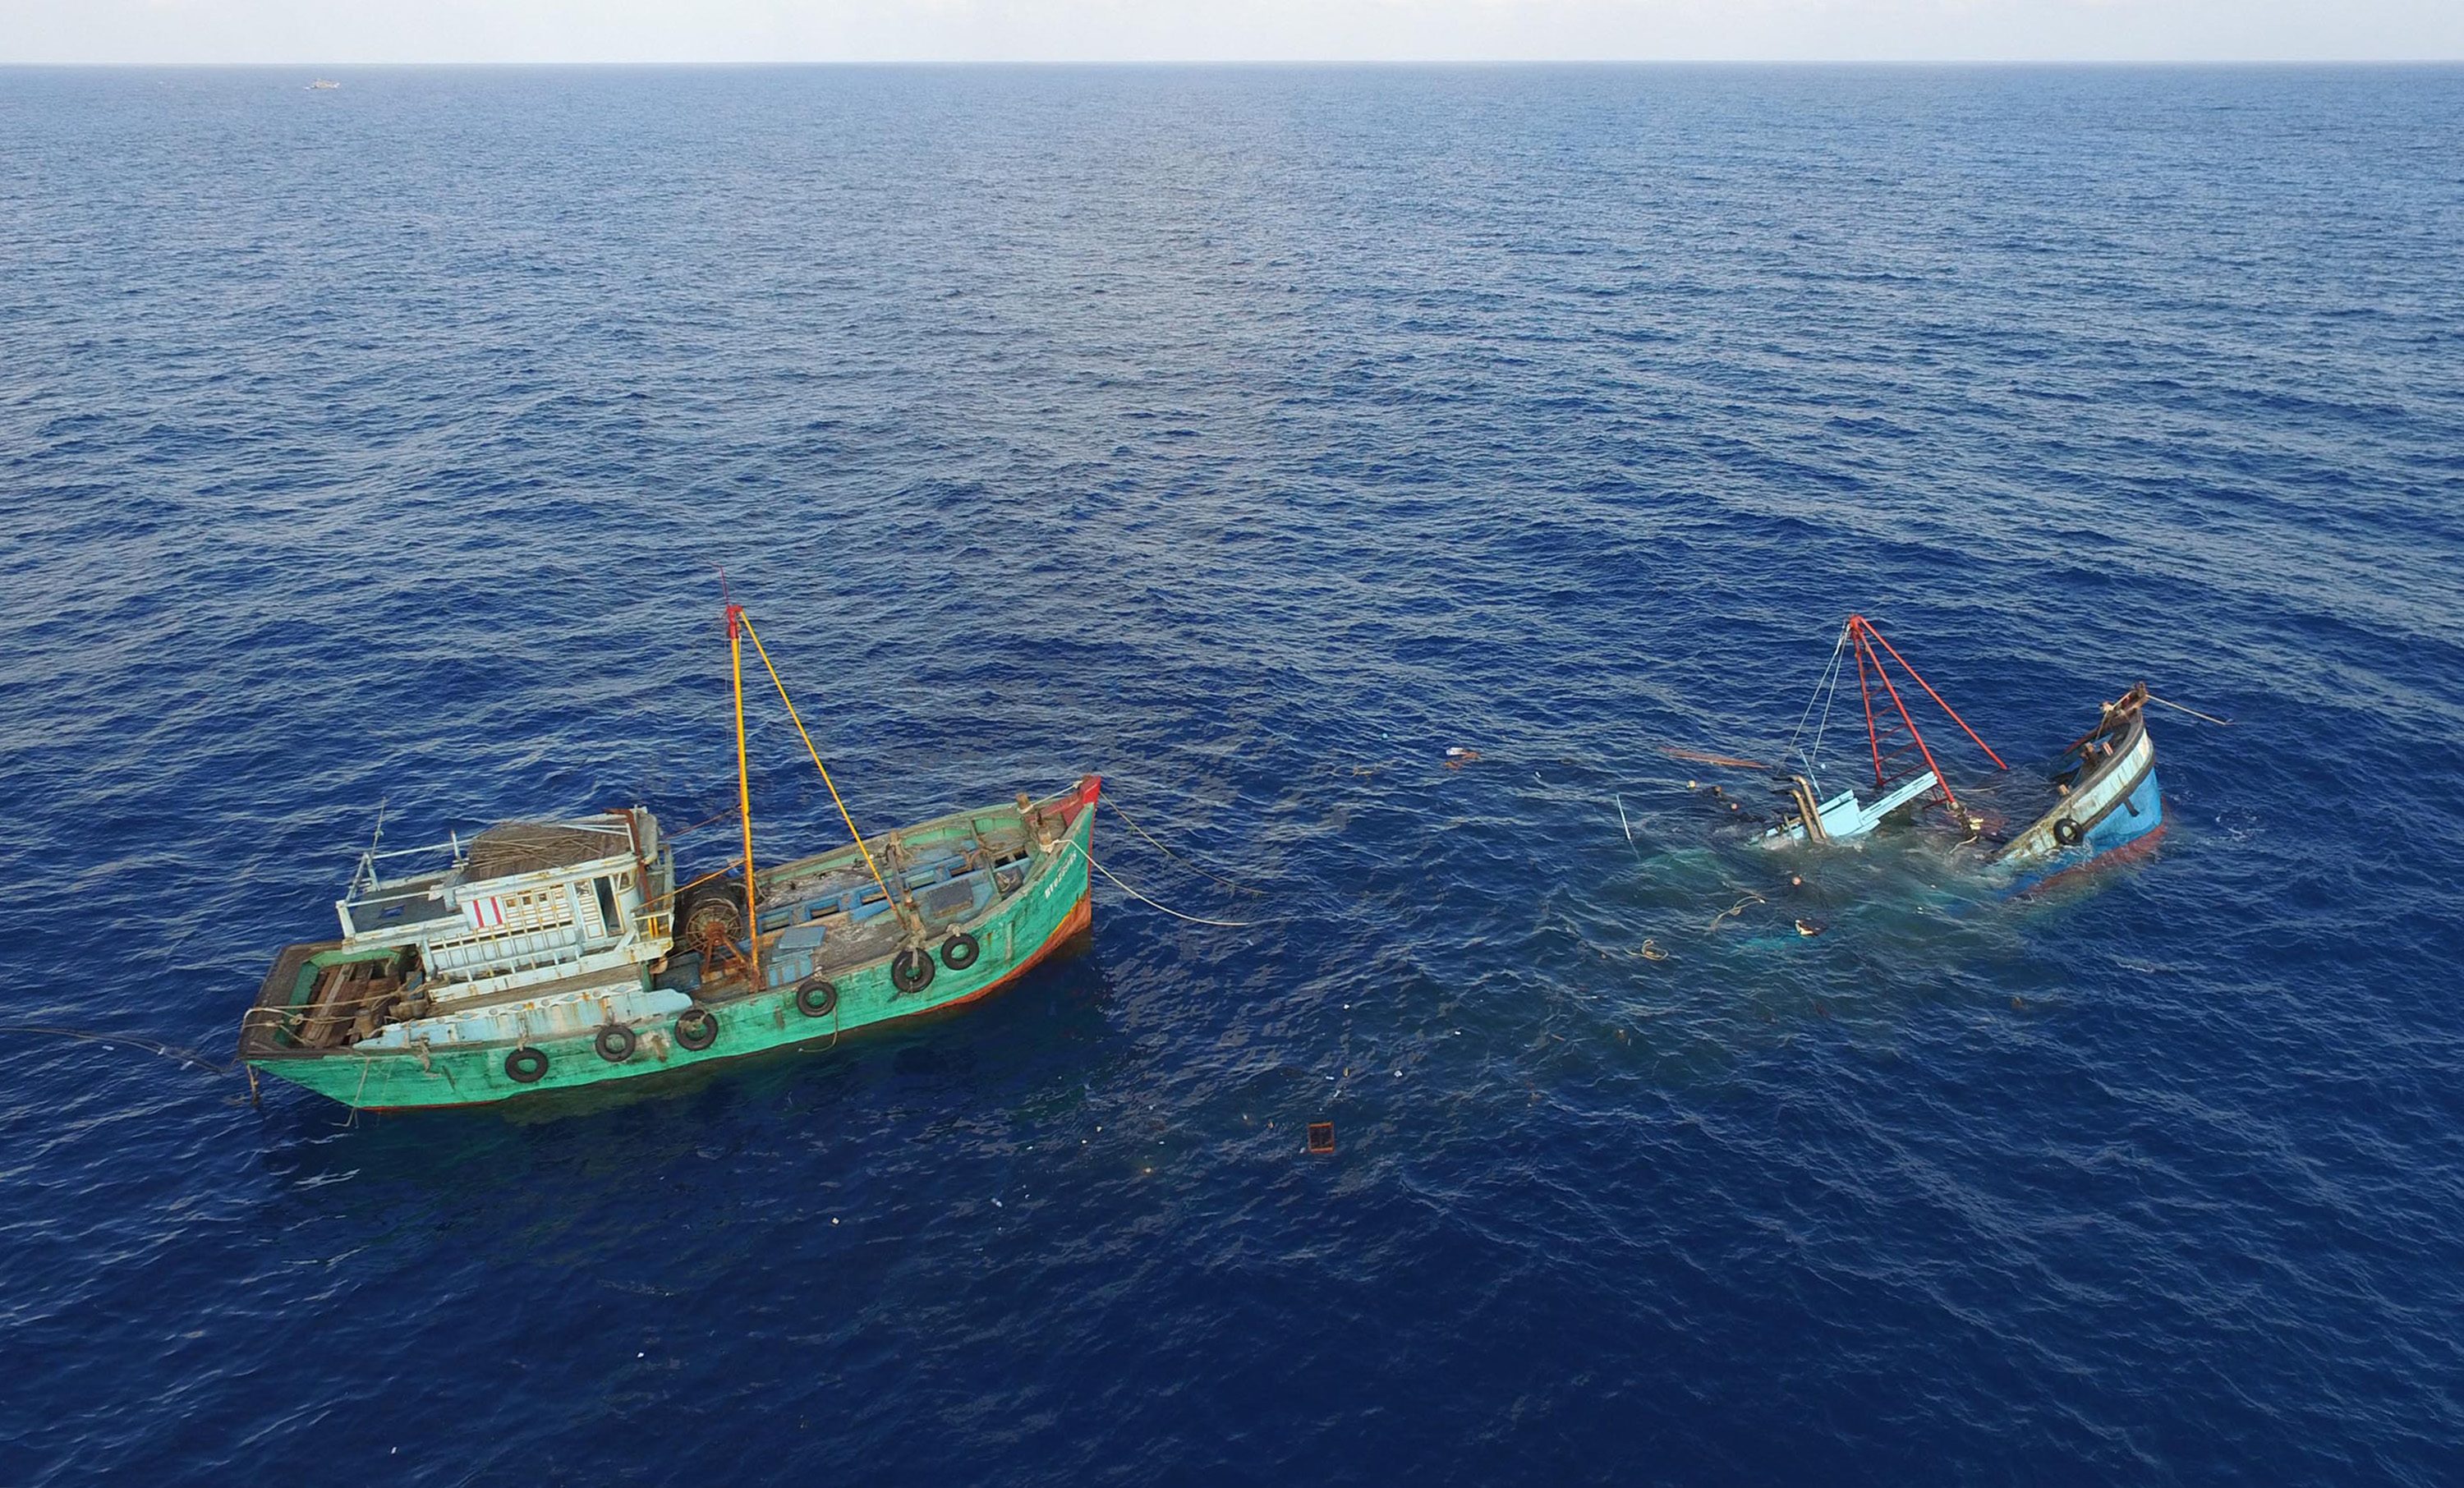 Kementerian Kelautan Perikanan (KKP) menenggelamkan 60 kapal asing di berbagai daerah dengan cara dibocorkan lambung kapalnya dan dicor semen sebagai pemberat. Foto oleh Humas KKP/Antara 